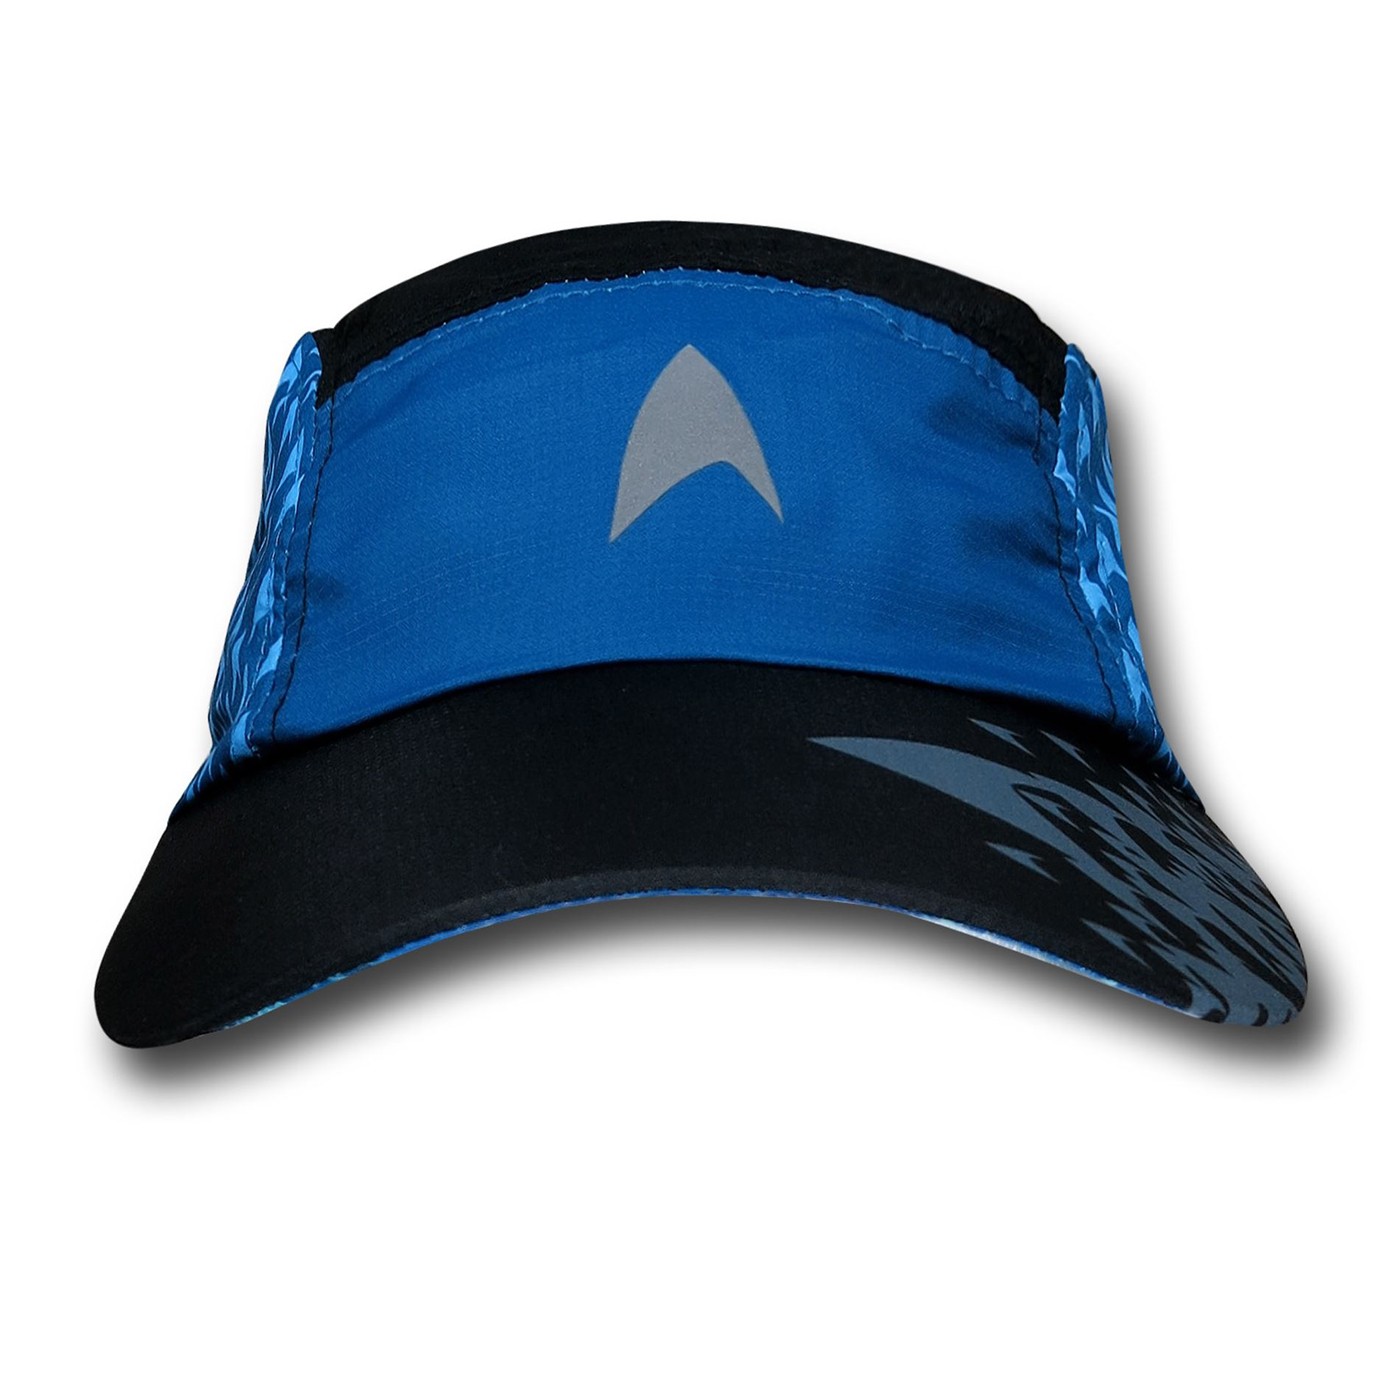 Star Trek Science Running Cap